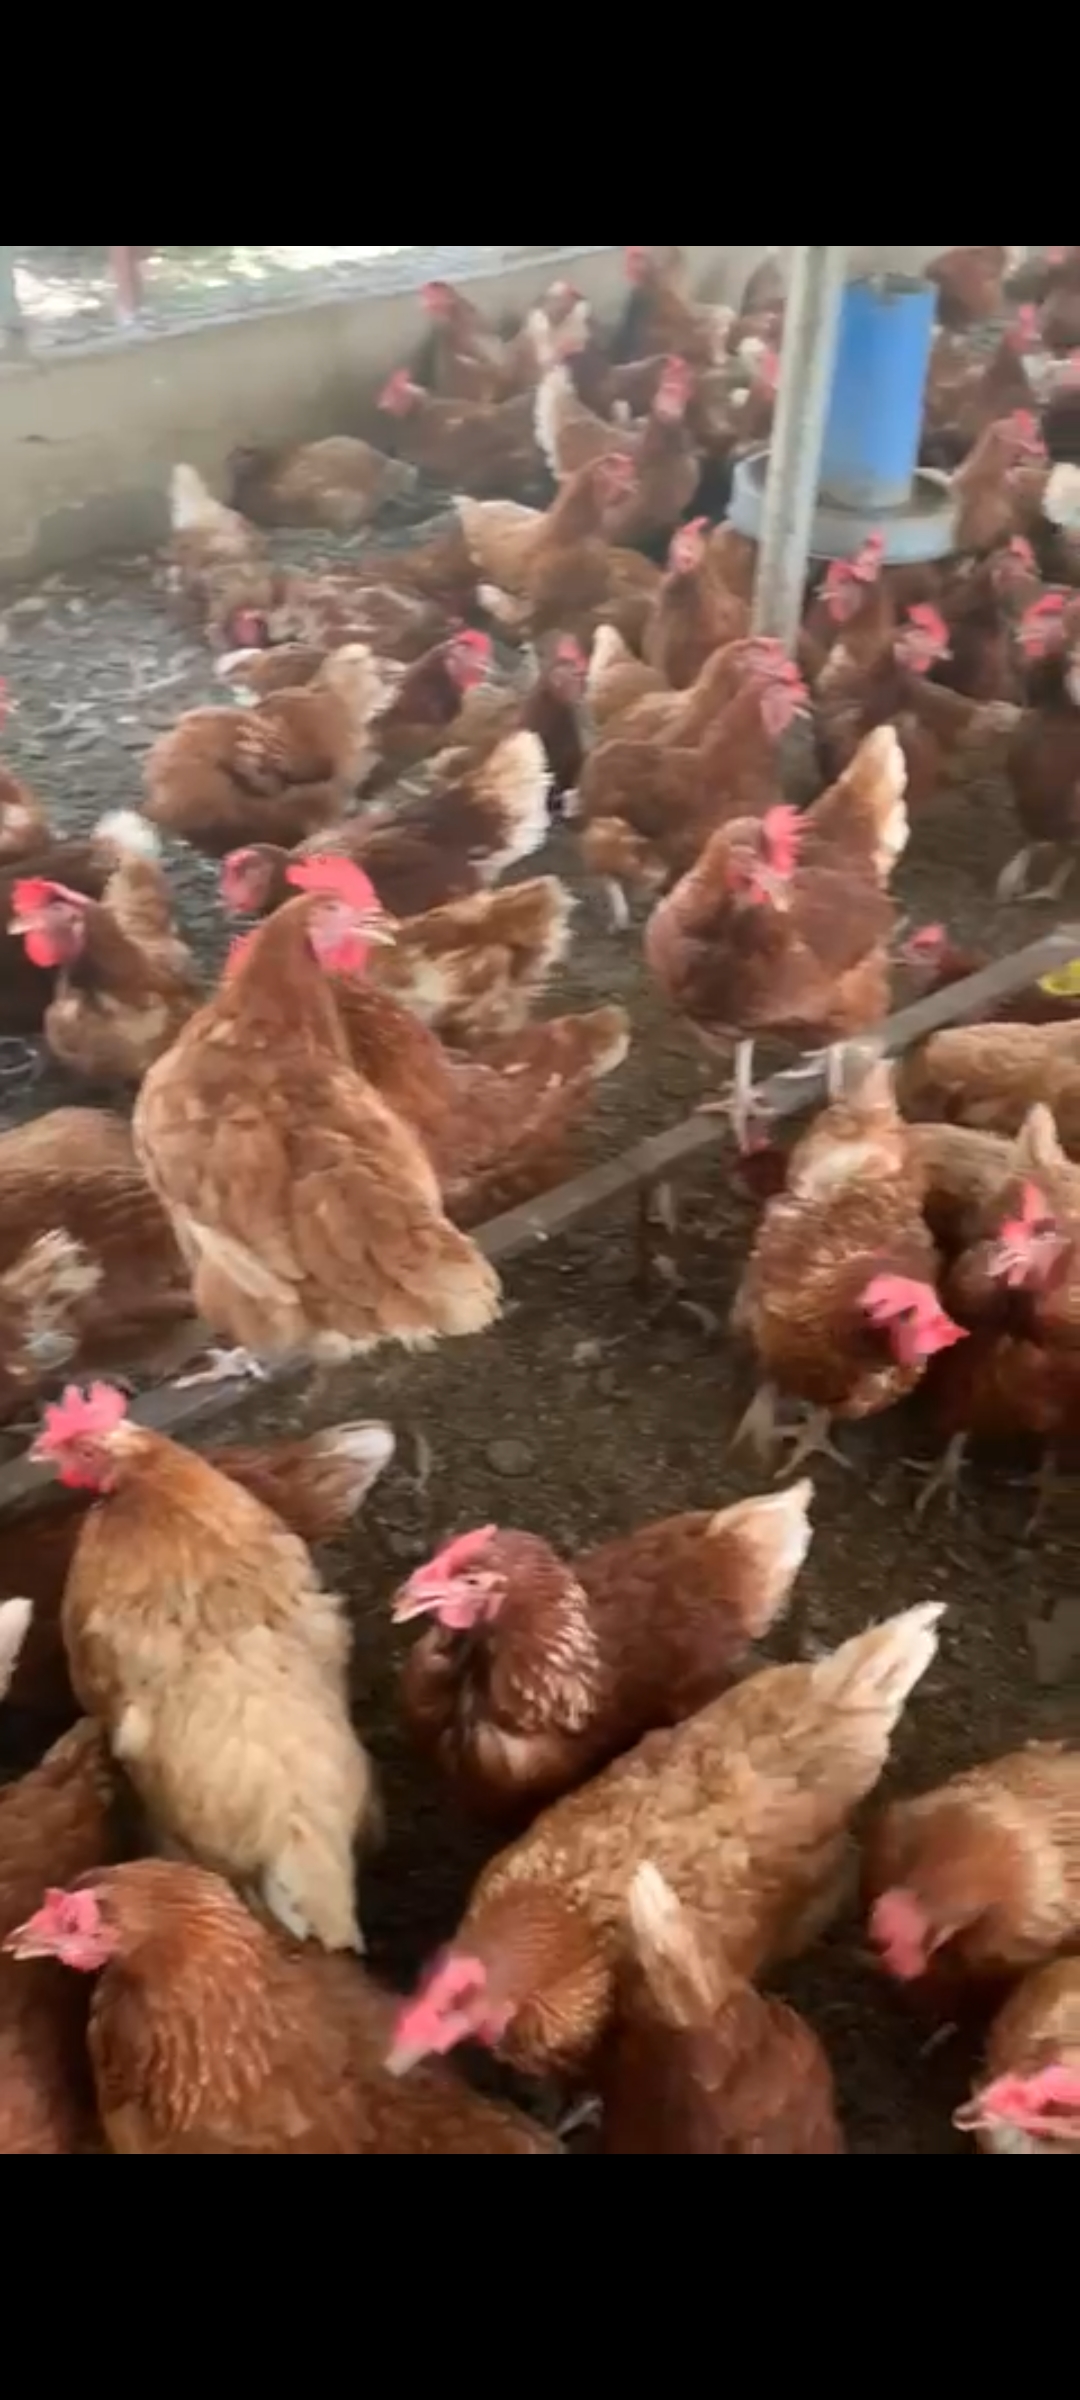 Vente poulets reformés Pour vos besoins de consommation et surtout pour les cérémonies, vente de poulets reformés de très bonne qualité à des prix abordables.